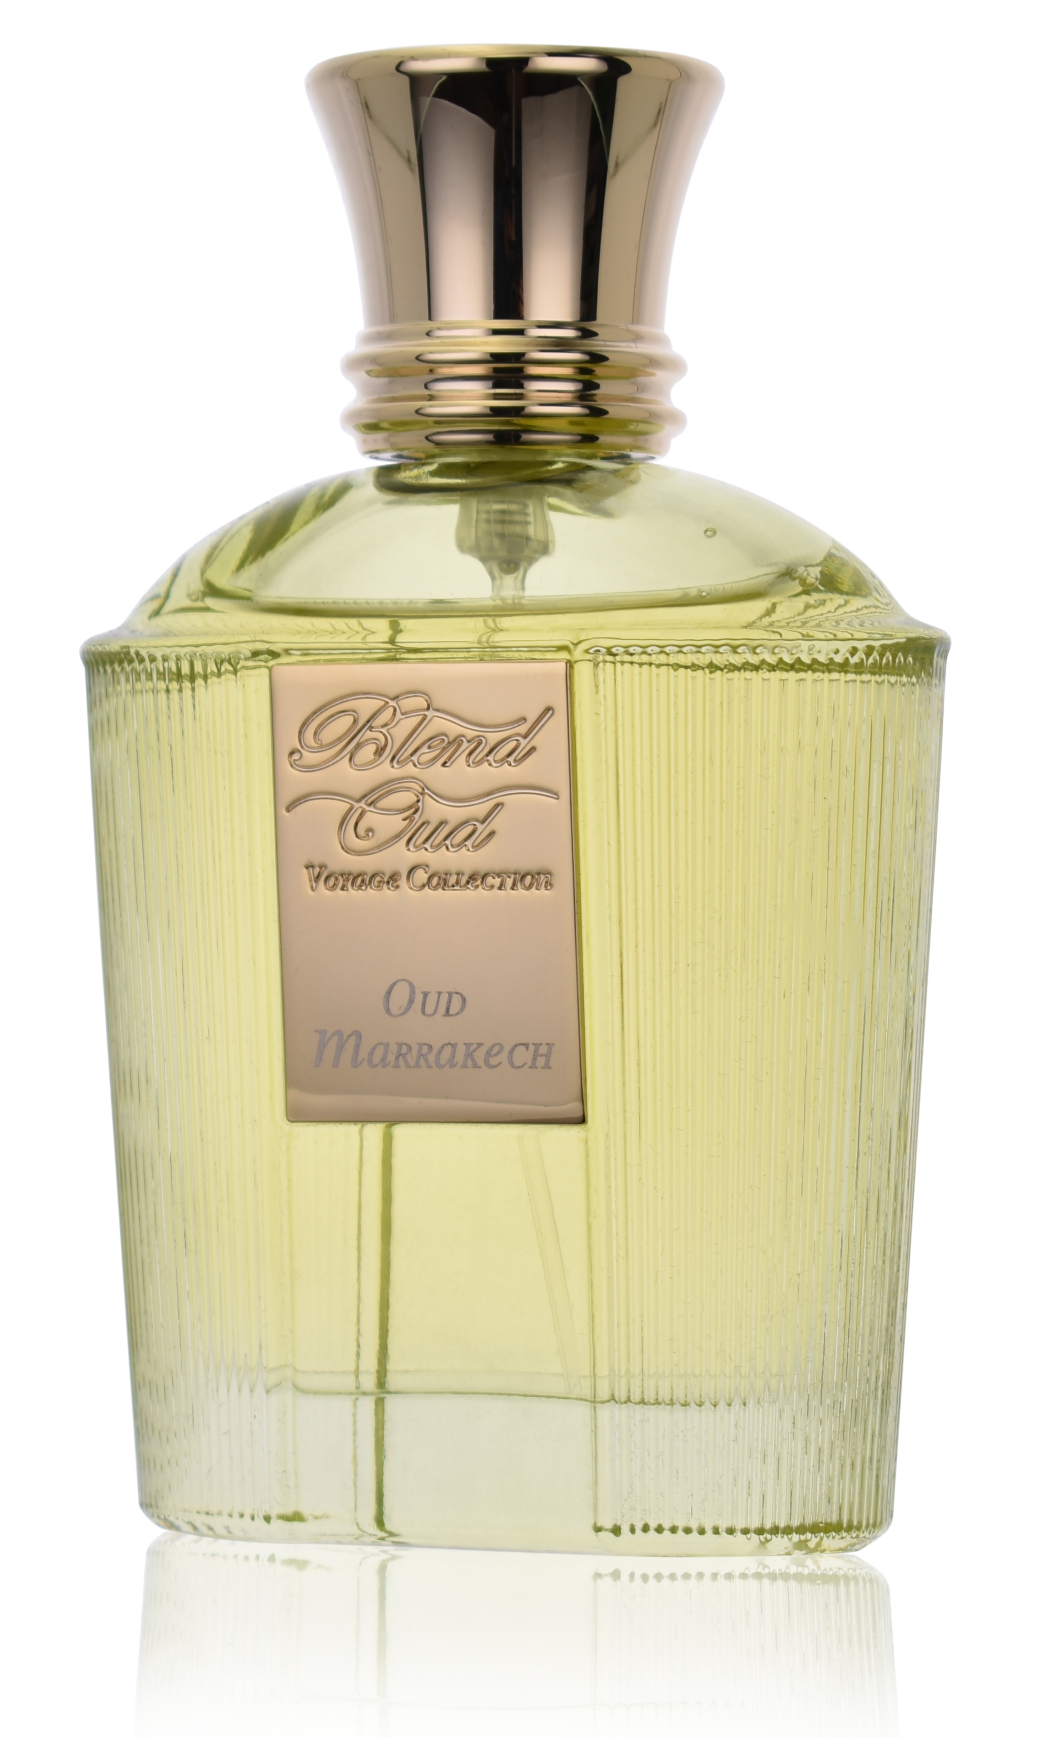 Blend Oud - Oud Marrakech 5 ml Eau de Parfum Abfüllung